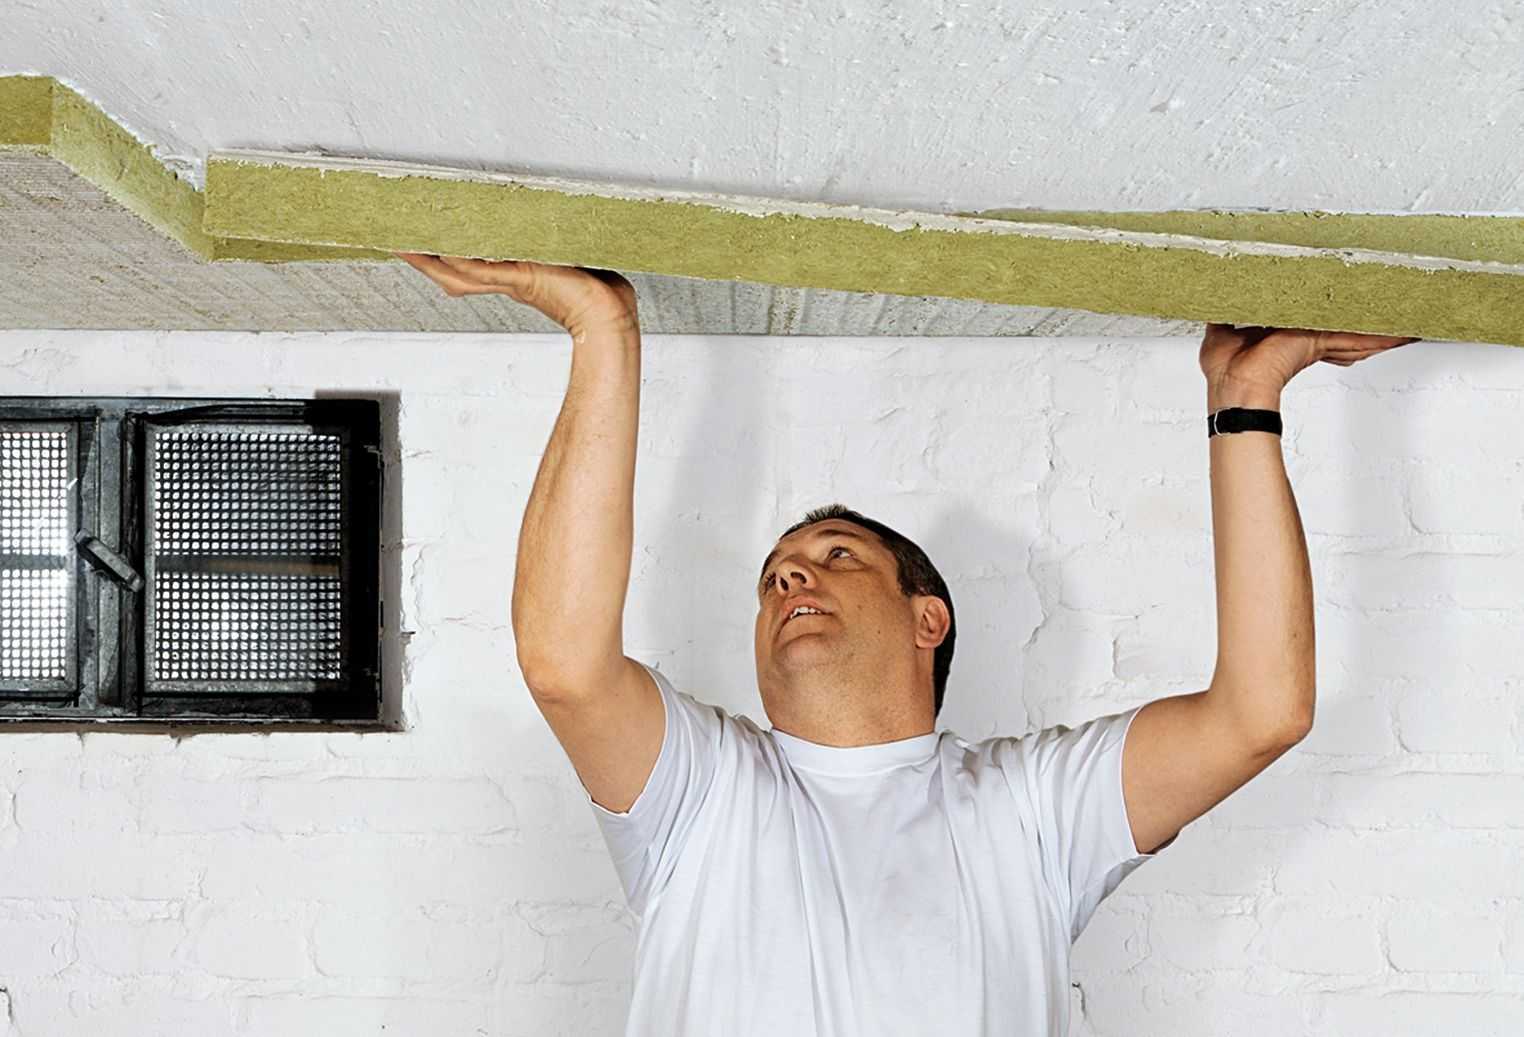 Утепление потолка и как правильно утеплить бетонный изнутри в квартире последнего этажа